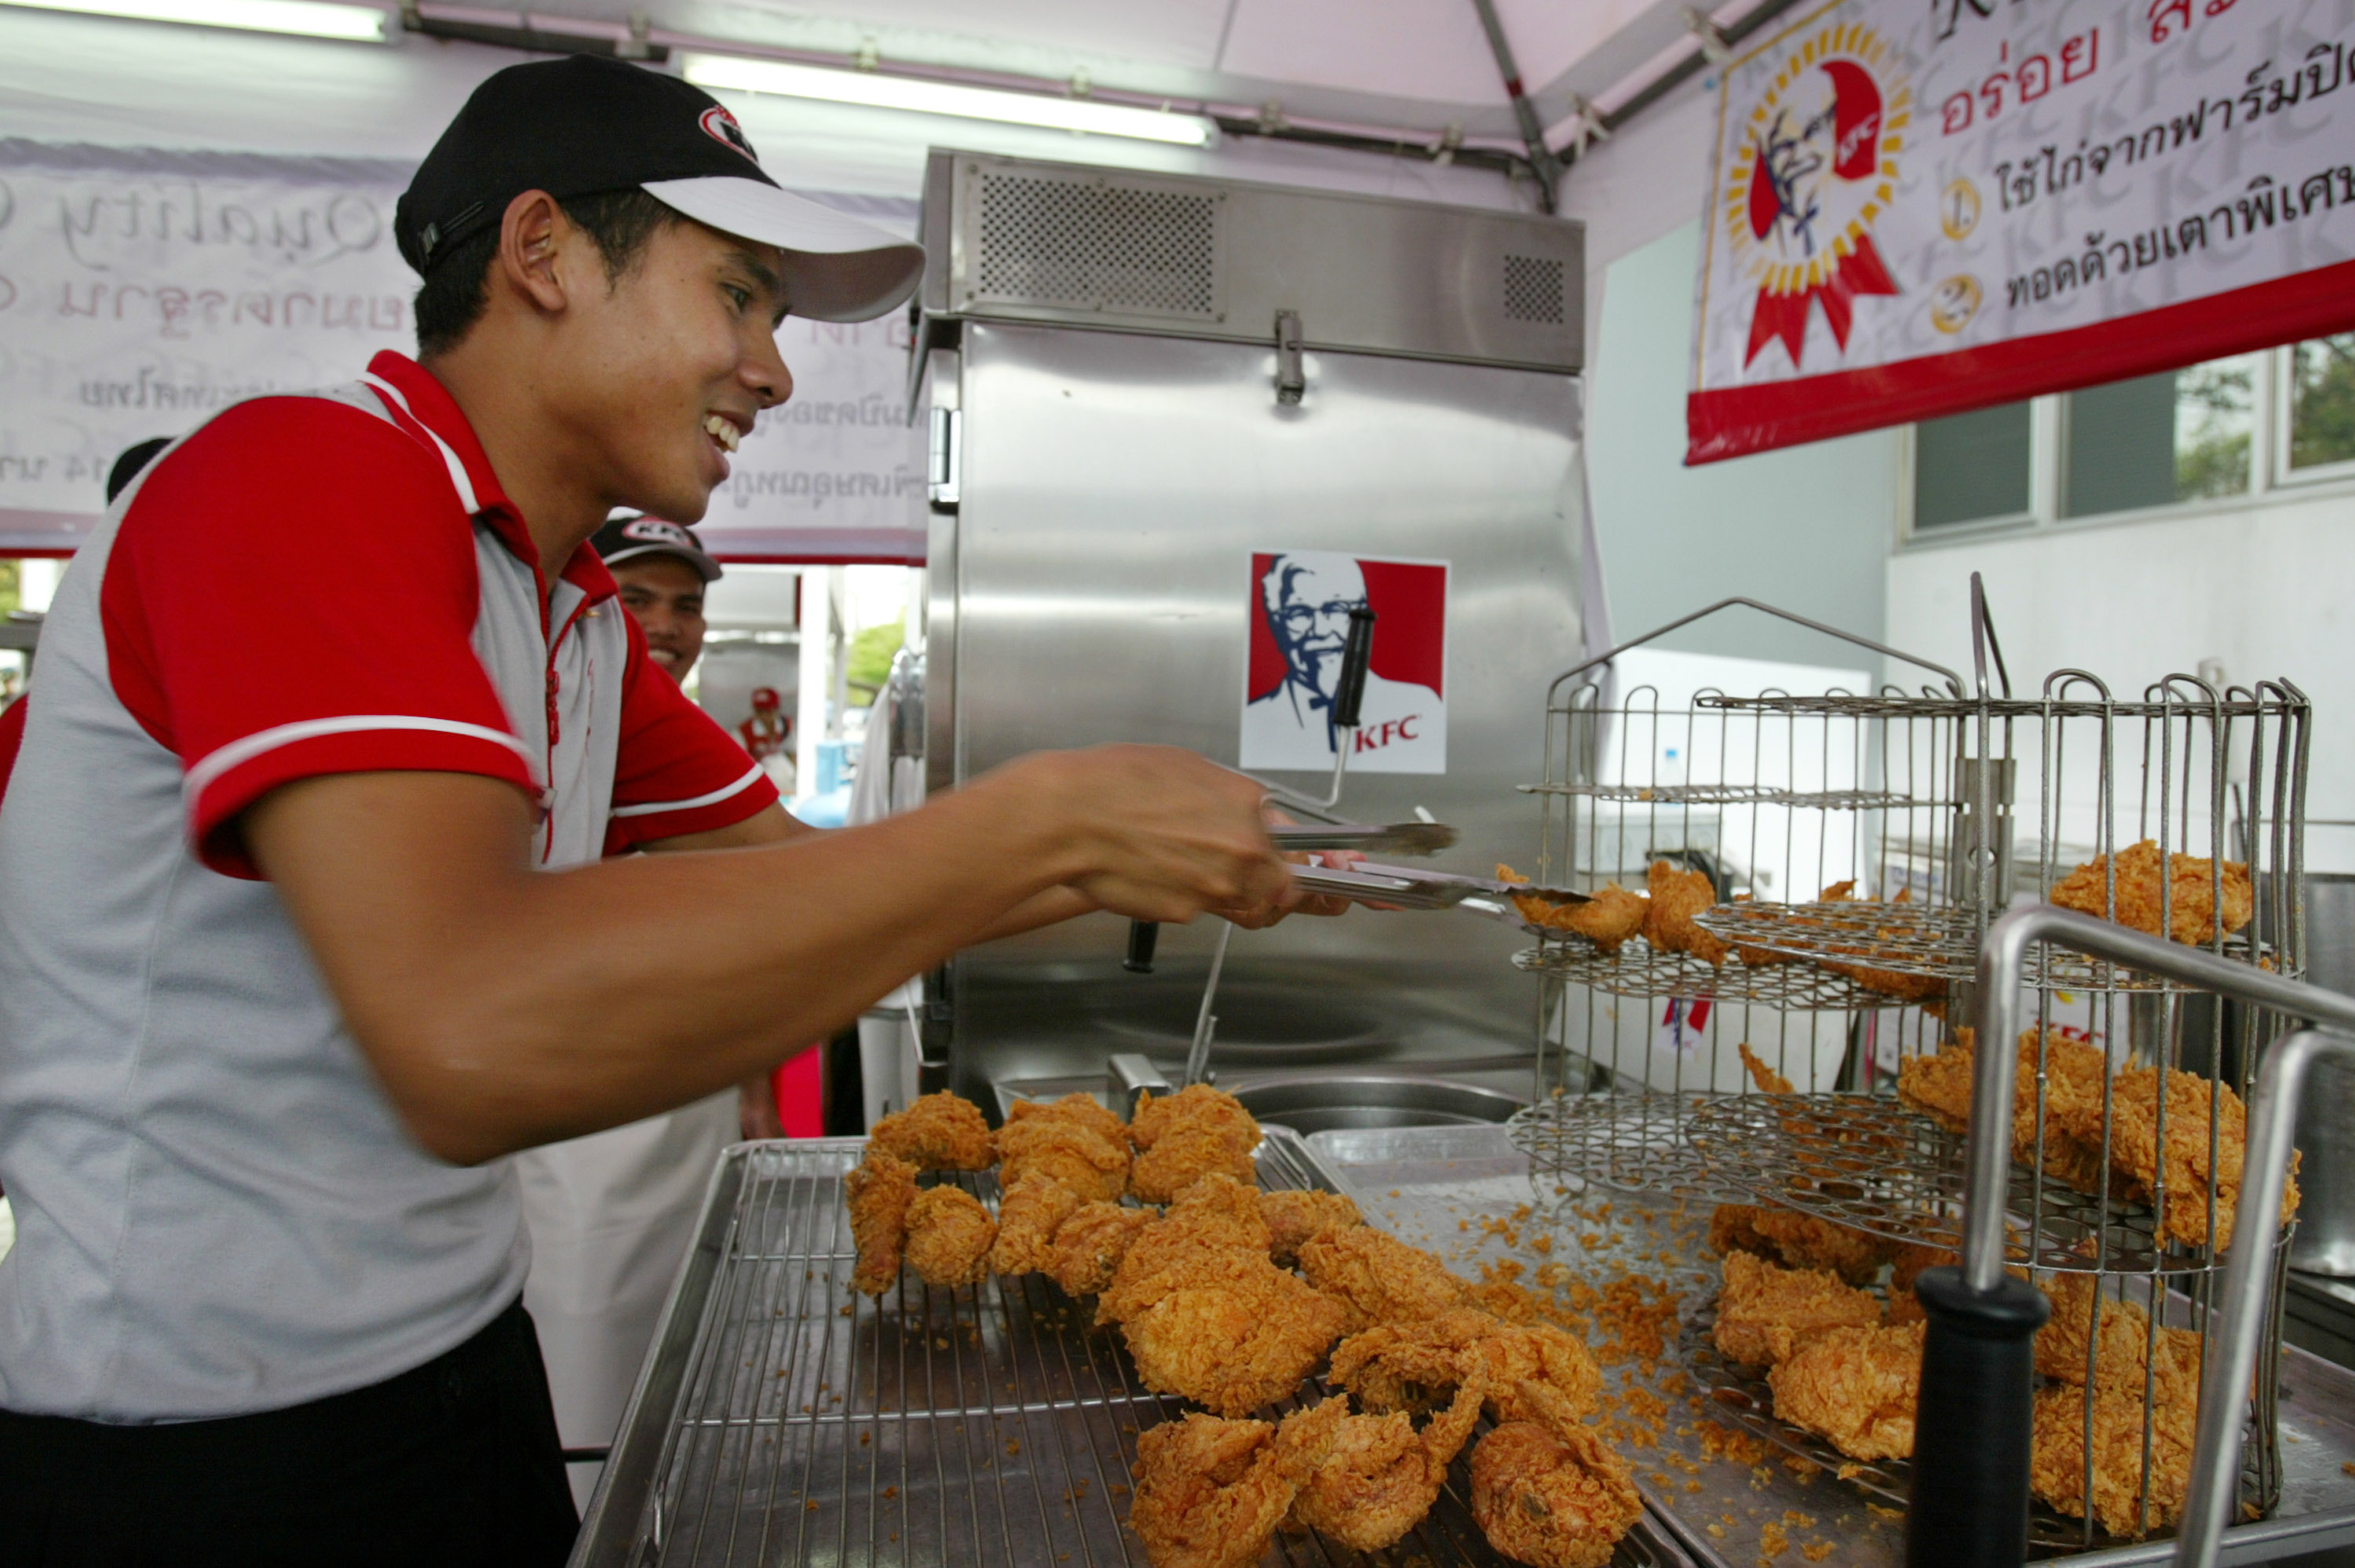 Chef obang fried chicken